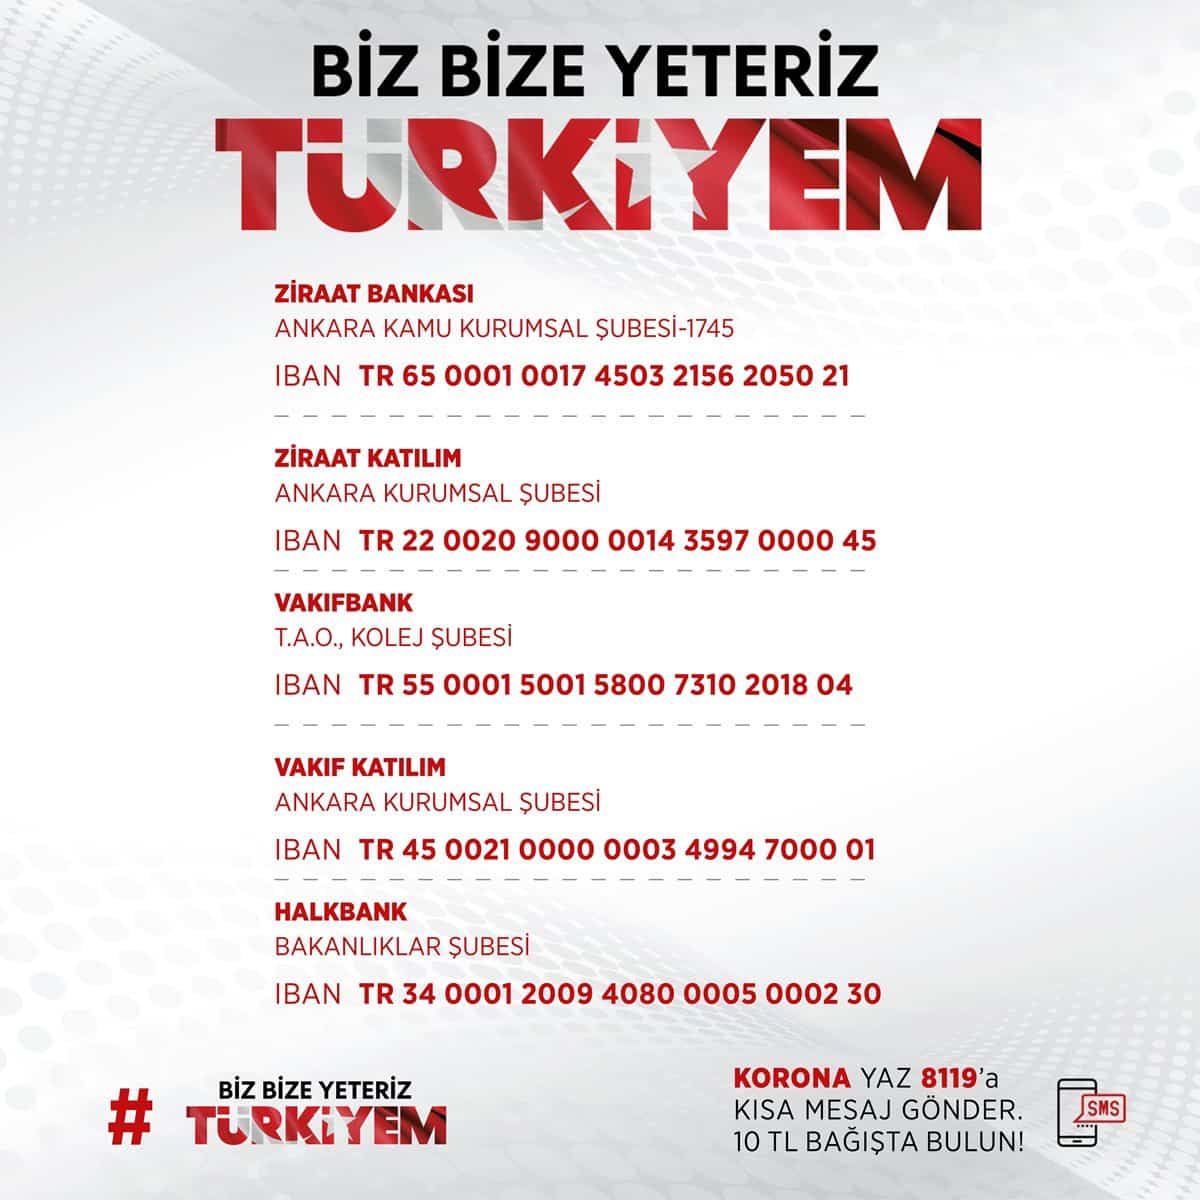 Erdoğan konuşması sonrası Milli Dayanışma Kampanyası bağış kampanyası hesap numaraları paylaşıldı: